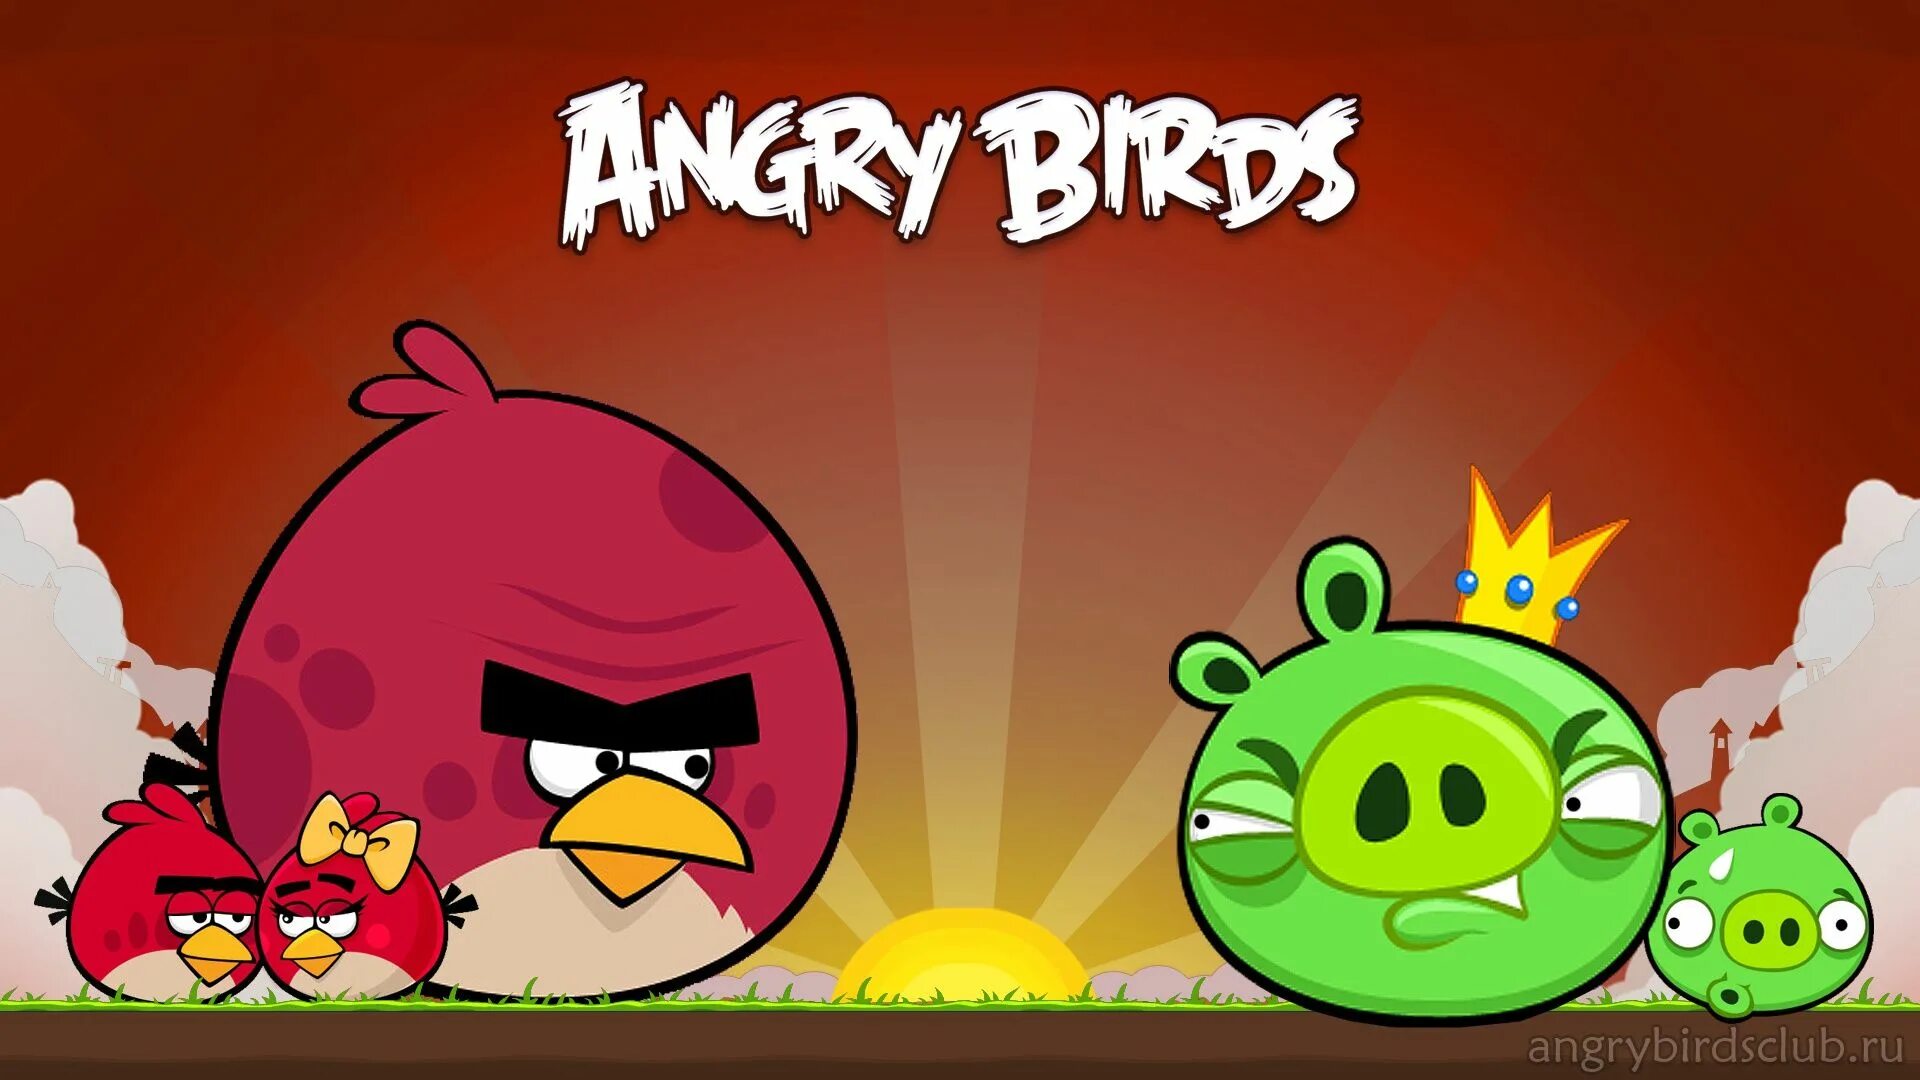 Angry birds versions. Энгри бёрдз злые птички. Angry Birds игры Rovio. Энгри бердз свиньи игра. Angry Birds игра Постер.